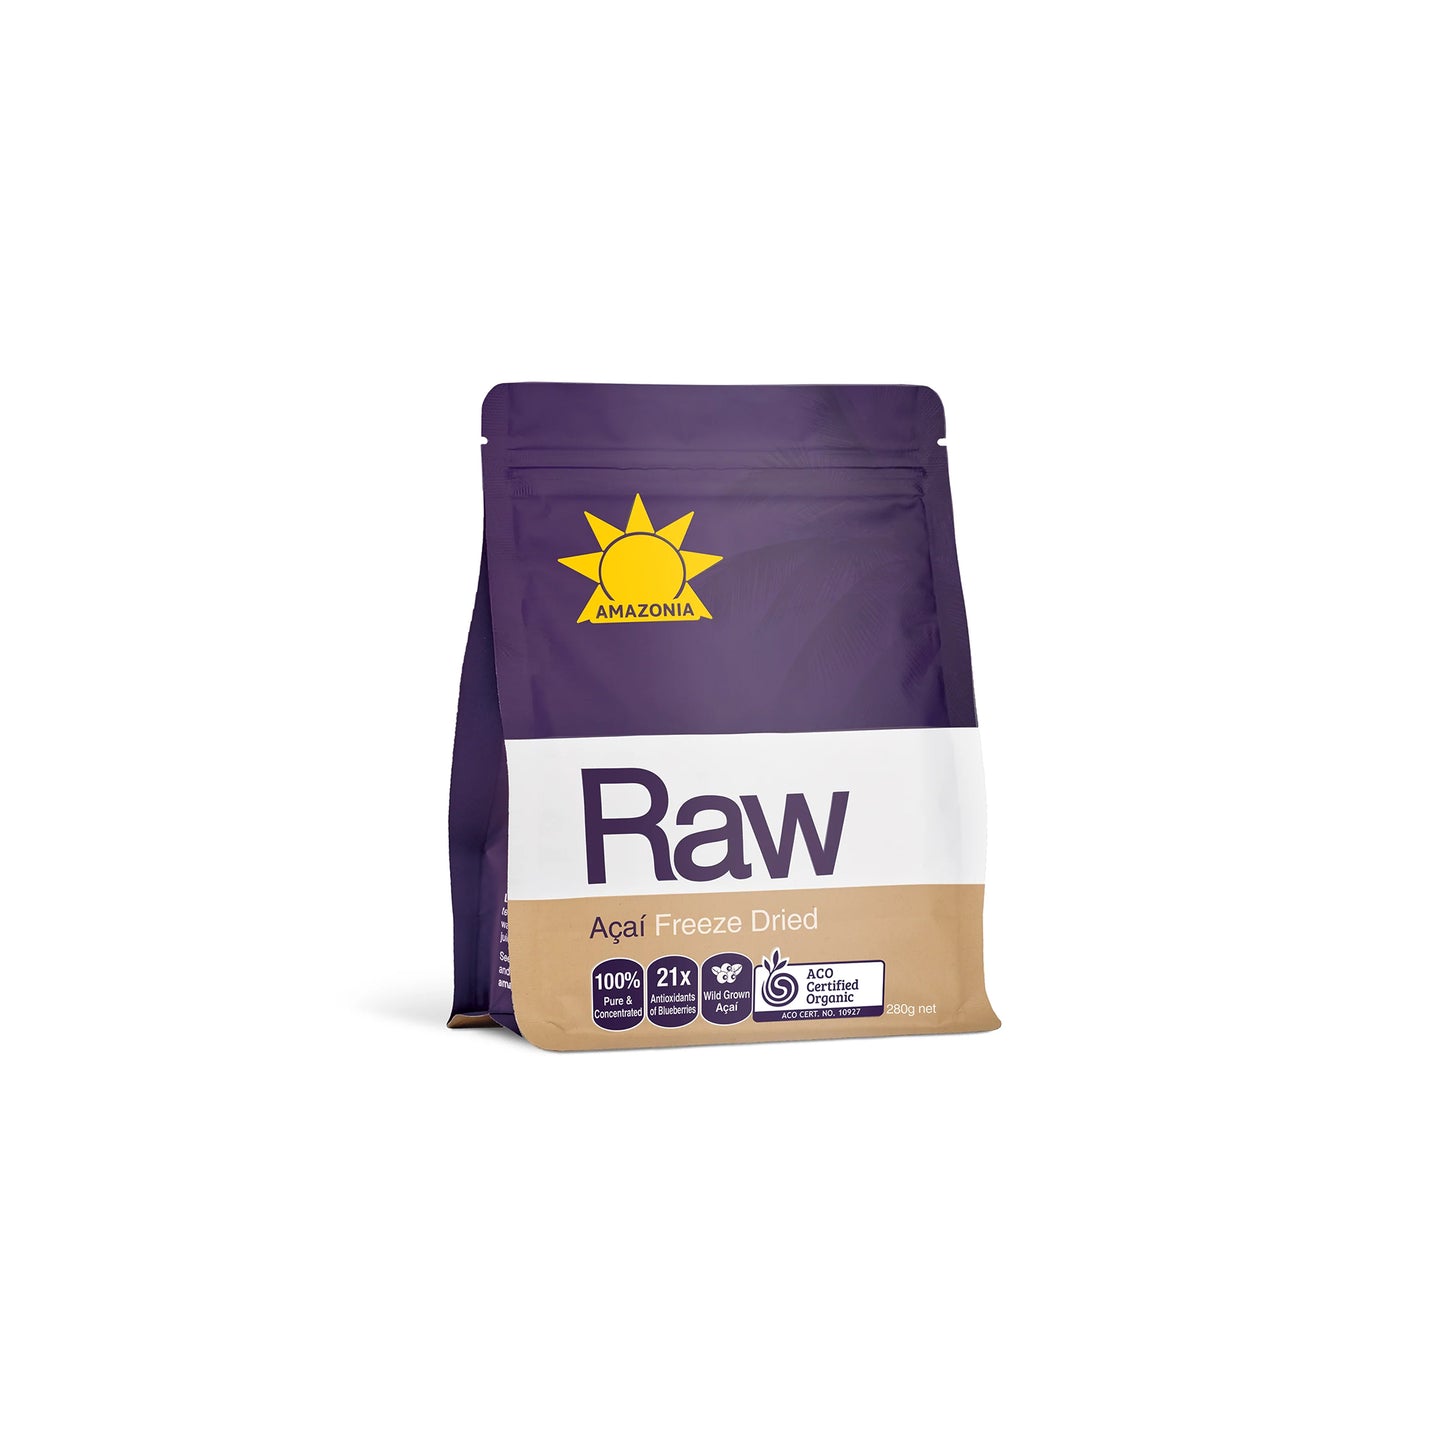 Raw Acai Freeze Dried Powder 280g - Amazonia | MLC Space